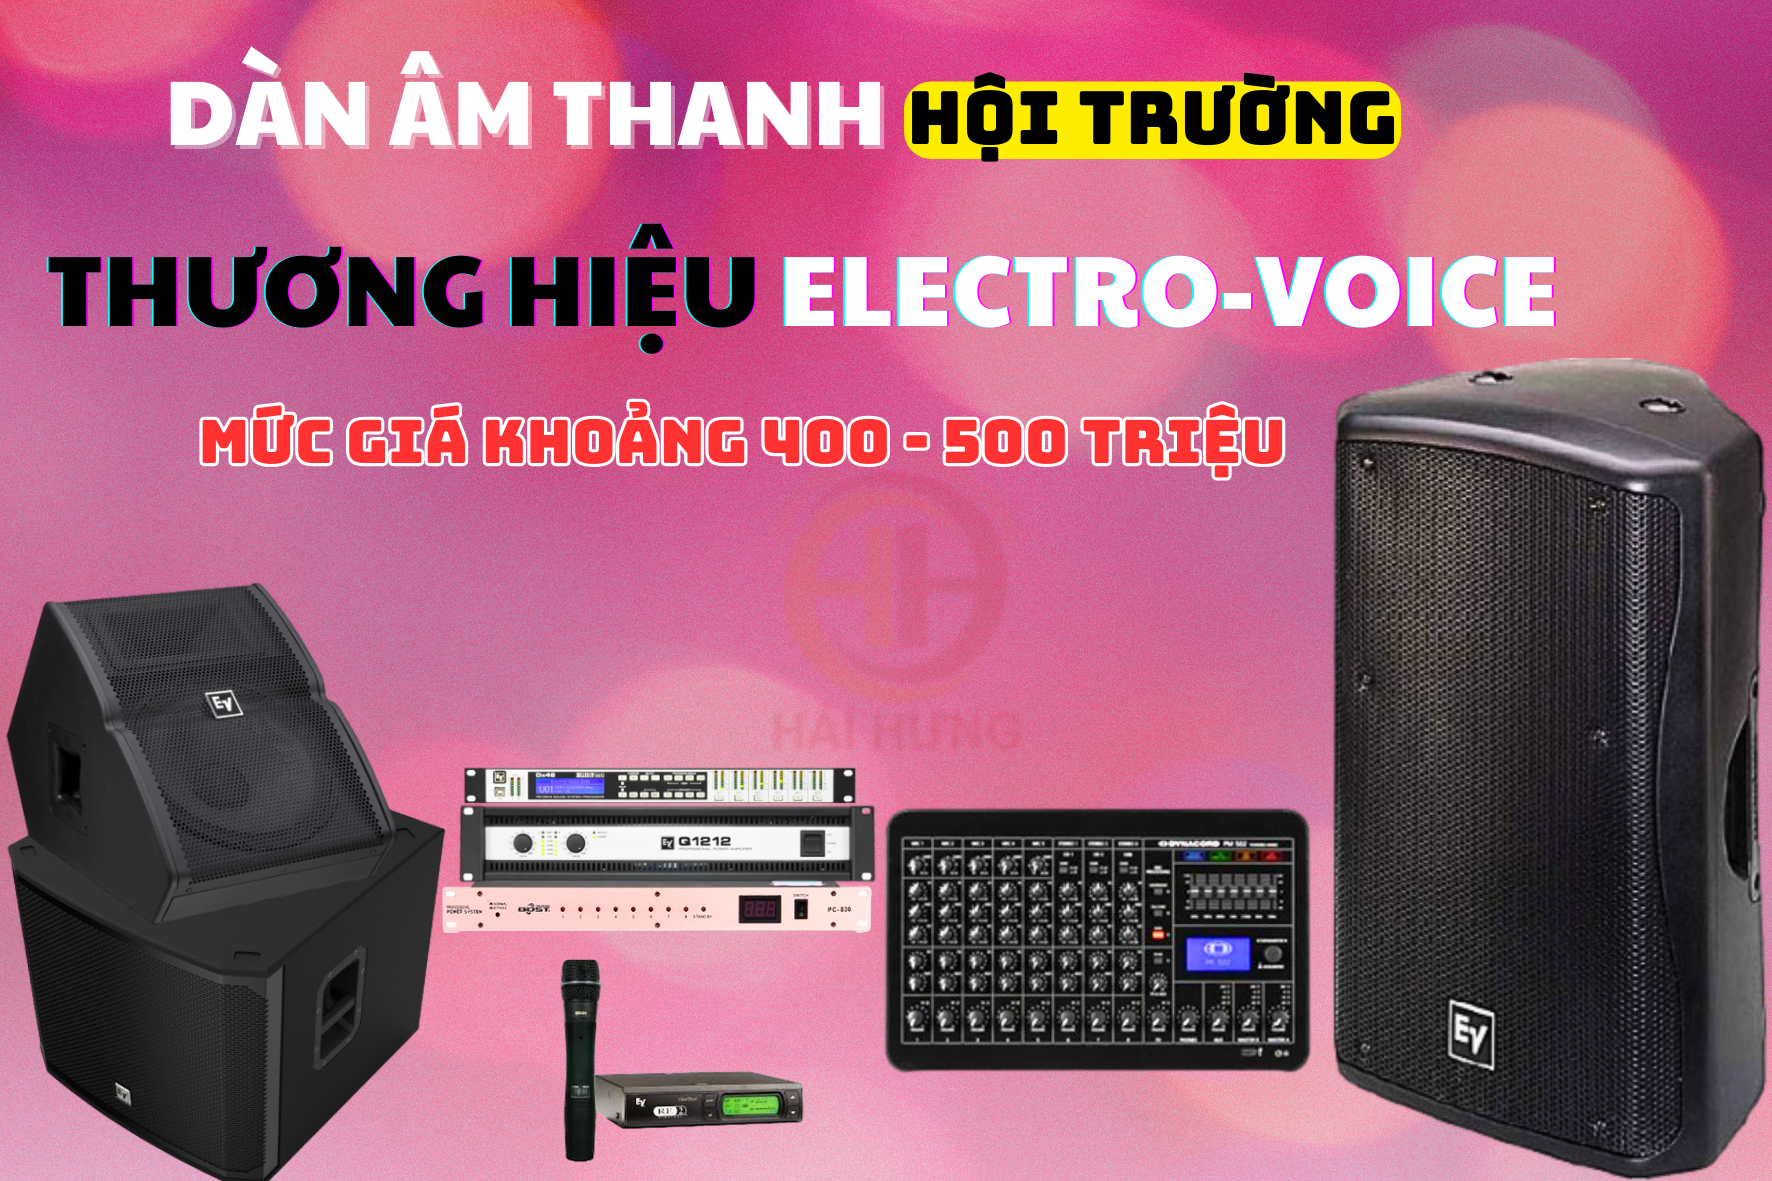 Dàn âm thanh hội trường thương hiệu Electro-Voice mức giá khoảng 400 - 500 triệu